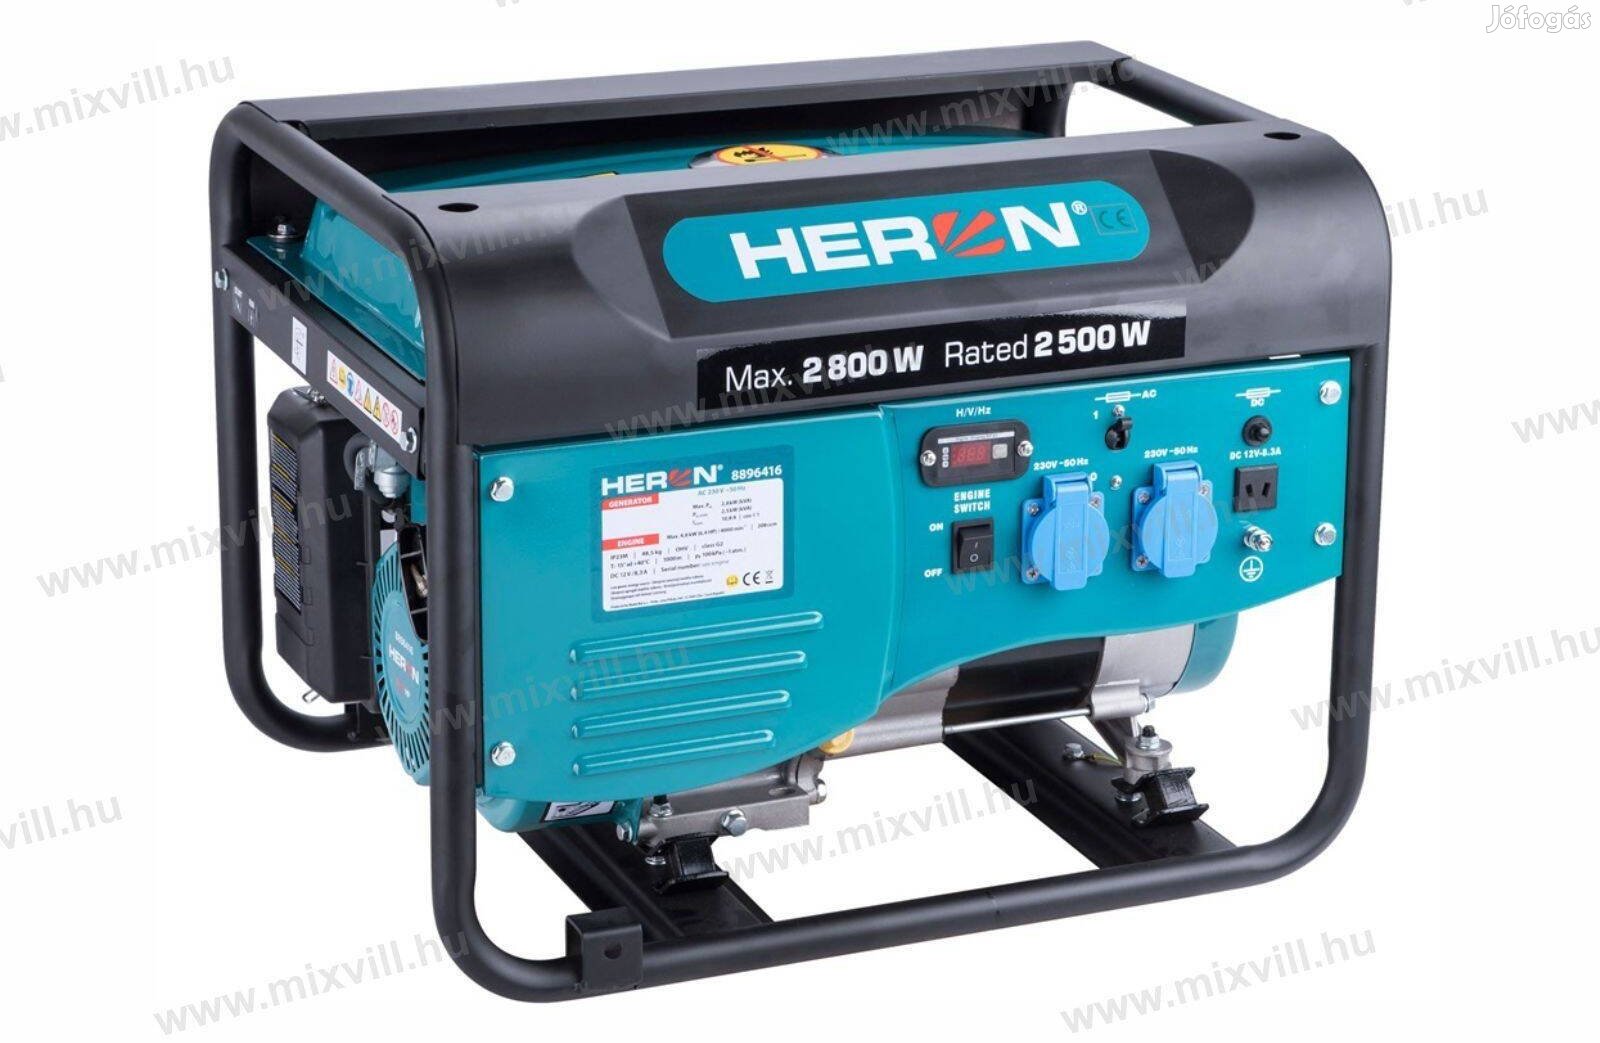 Heron benzinmotoros áramfejlesztő, max 2600 VA, egyfázisú (8896416)